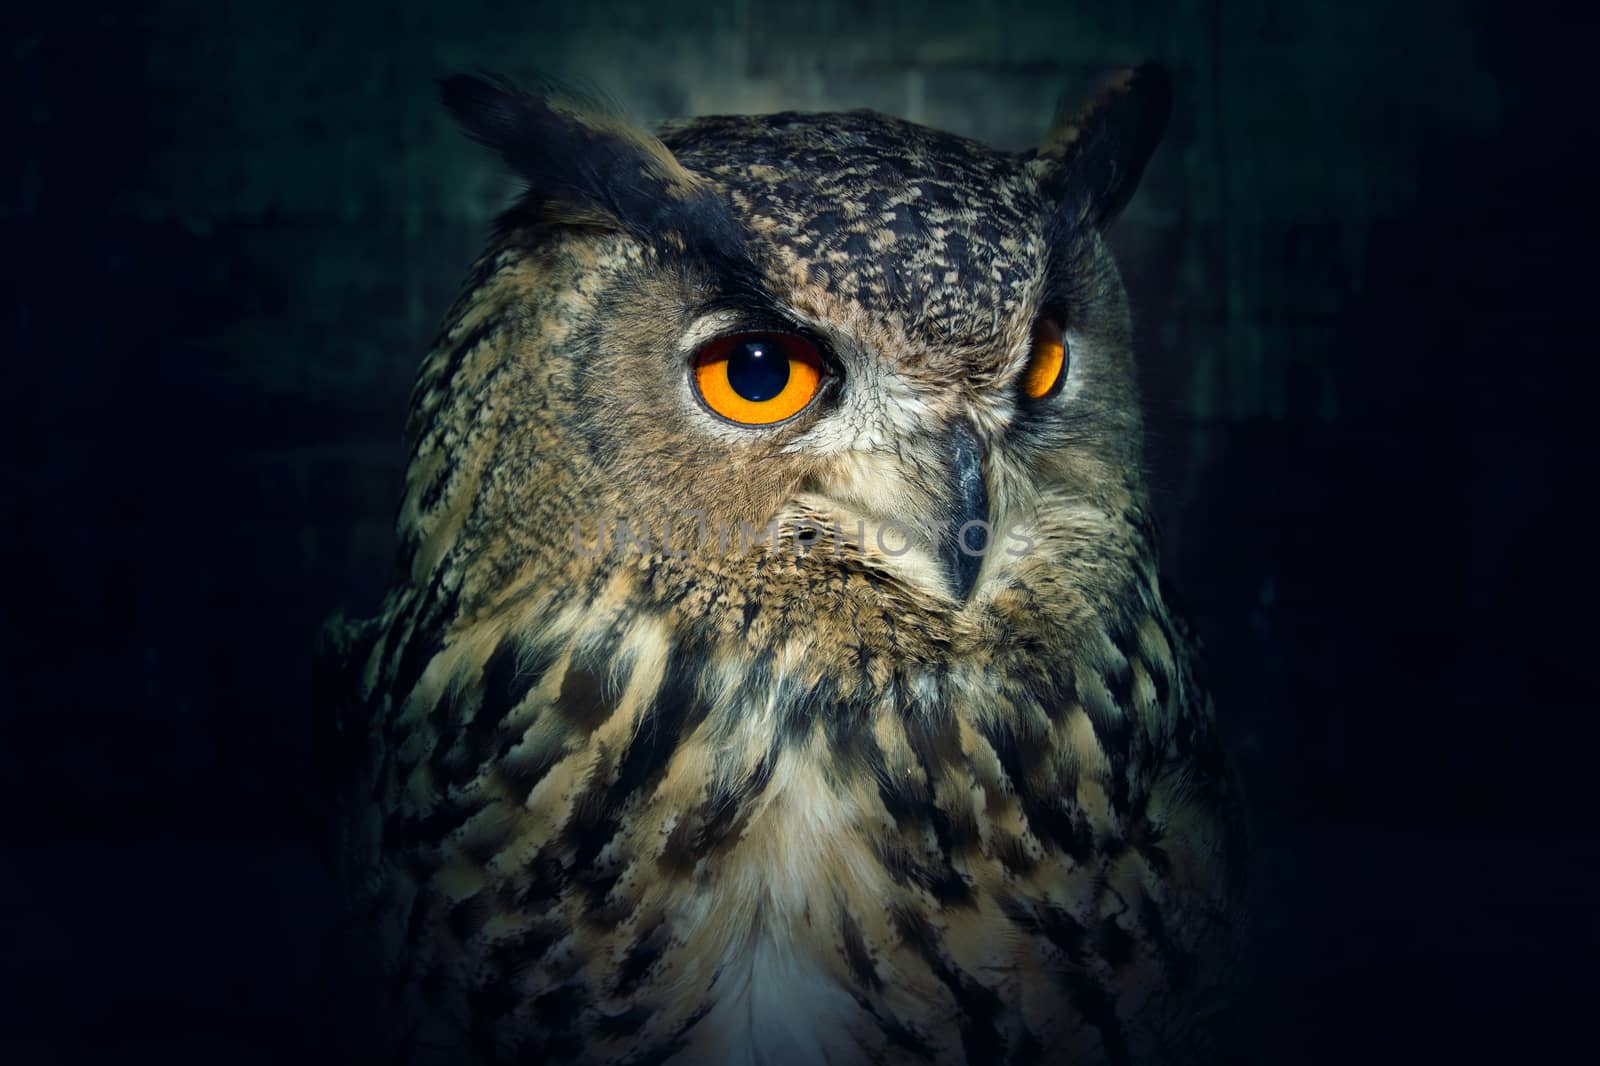 Owl close up at night. by satariel